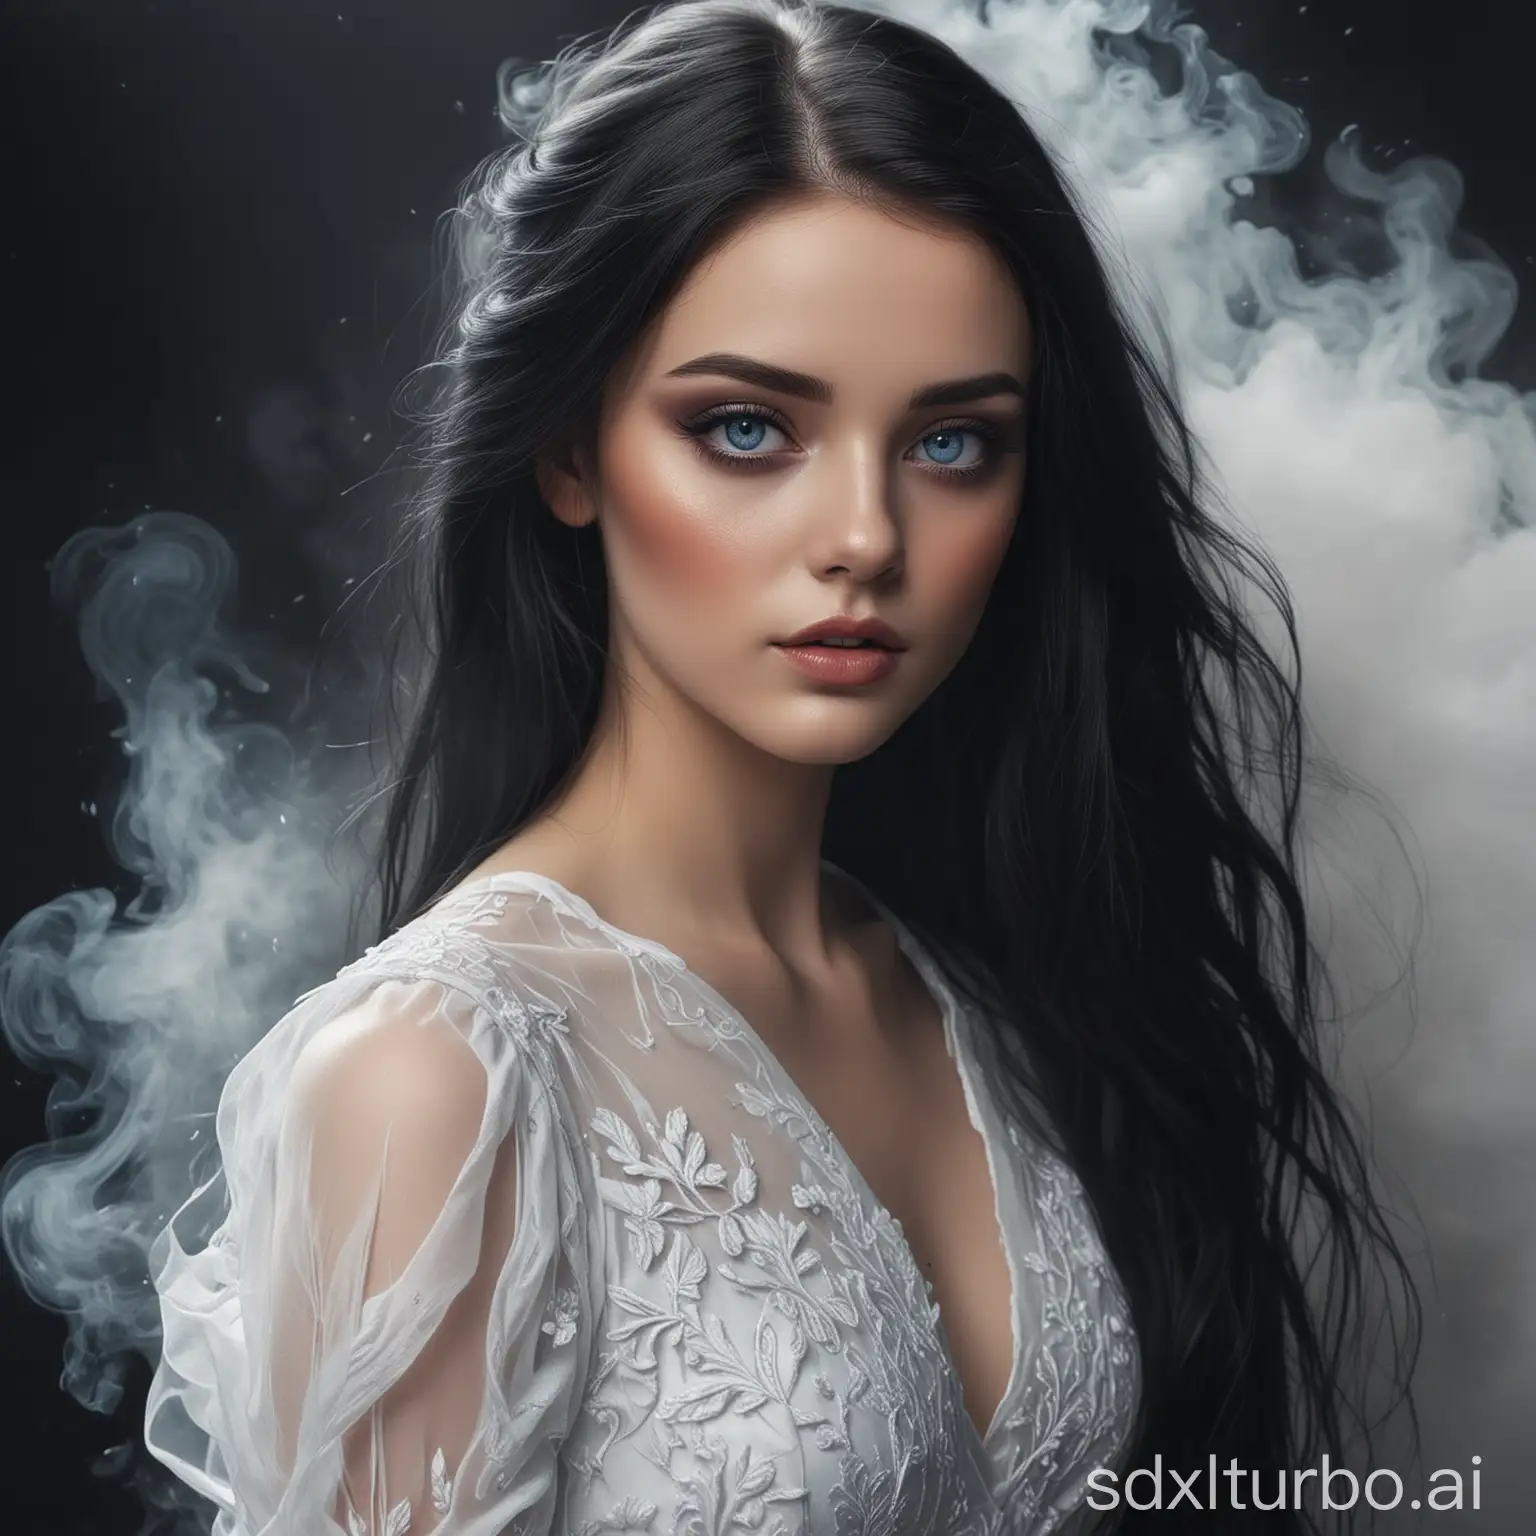 девушка с черными длинными волосами, голубыми глазами, в белом платье, с макияжем, в дыму, в реалистичном стиле